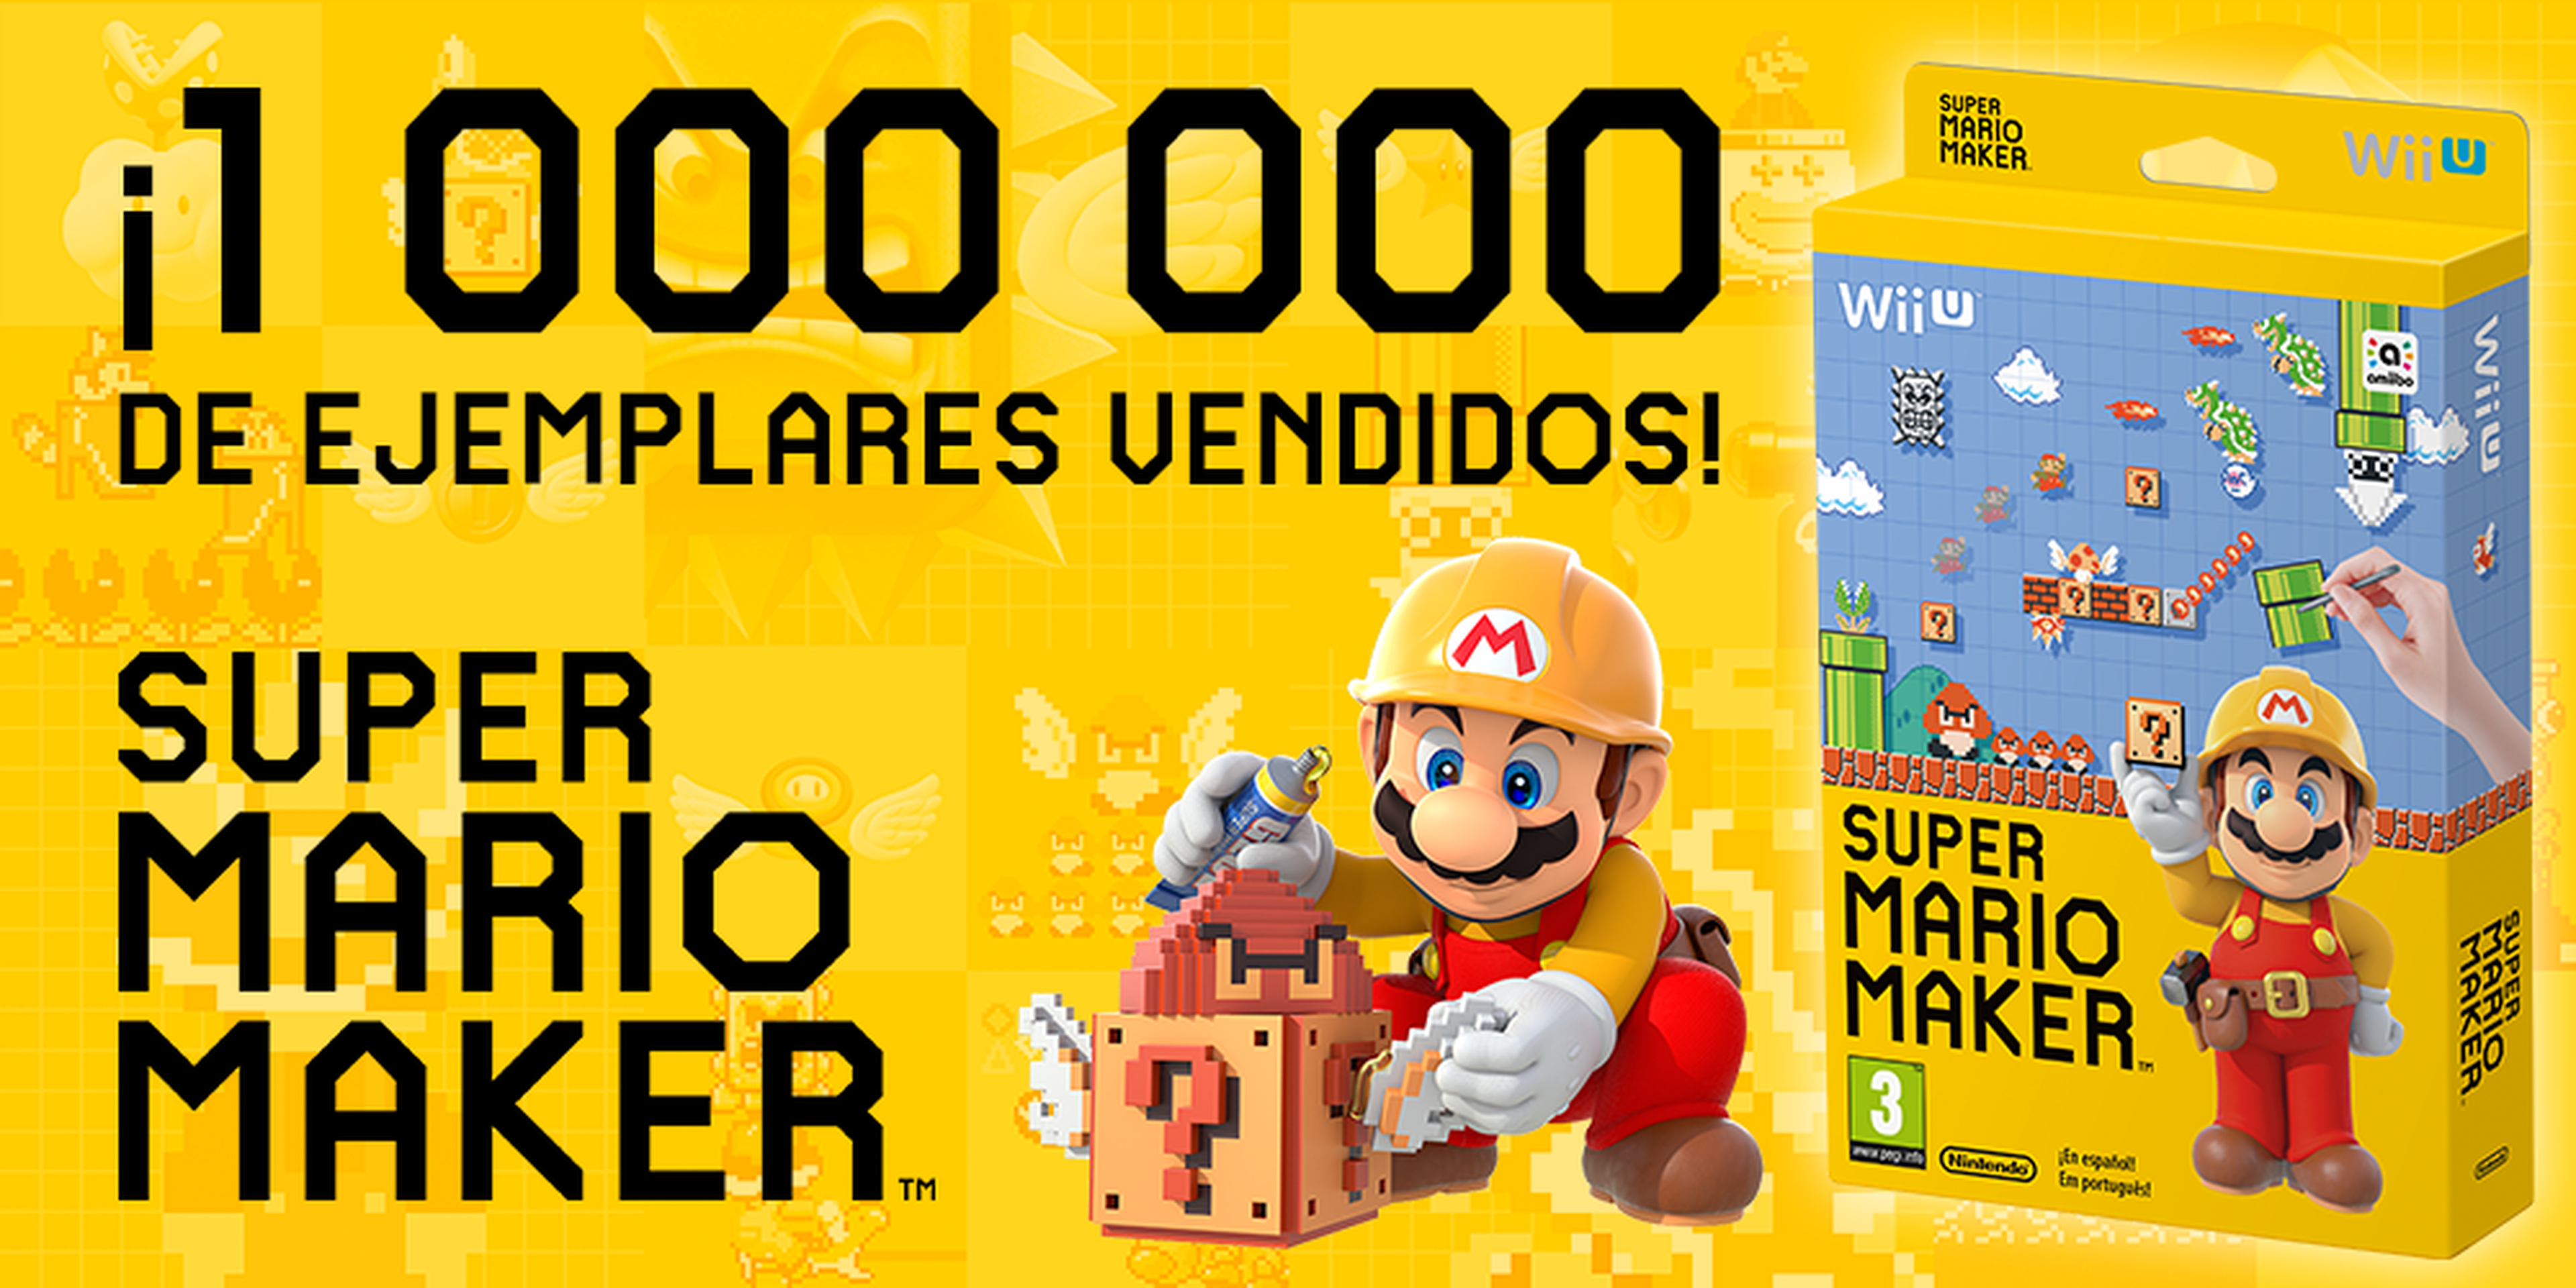 Super Mario Maker ya ha vendido 1 millón de unidades